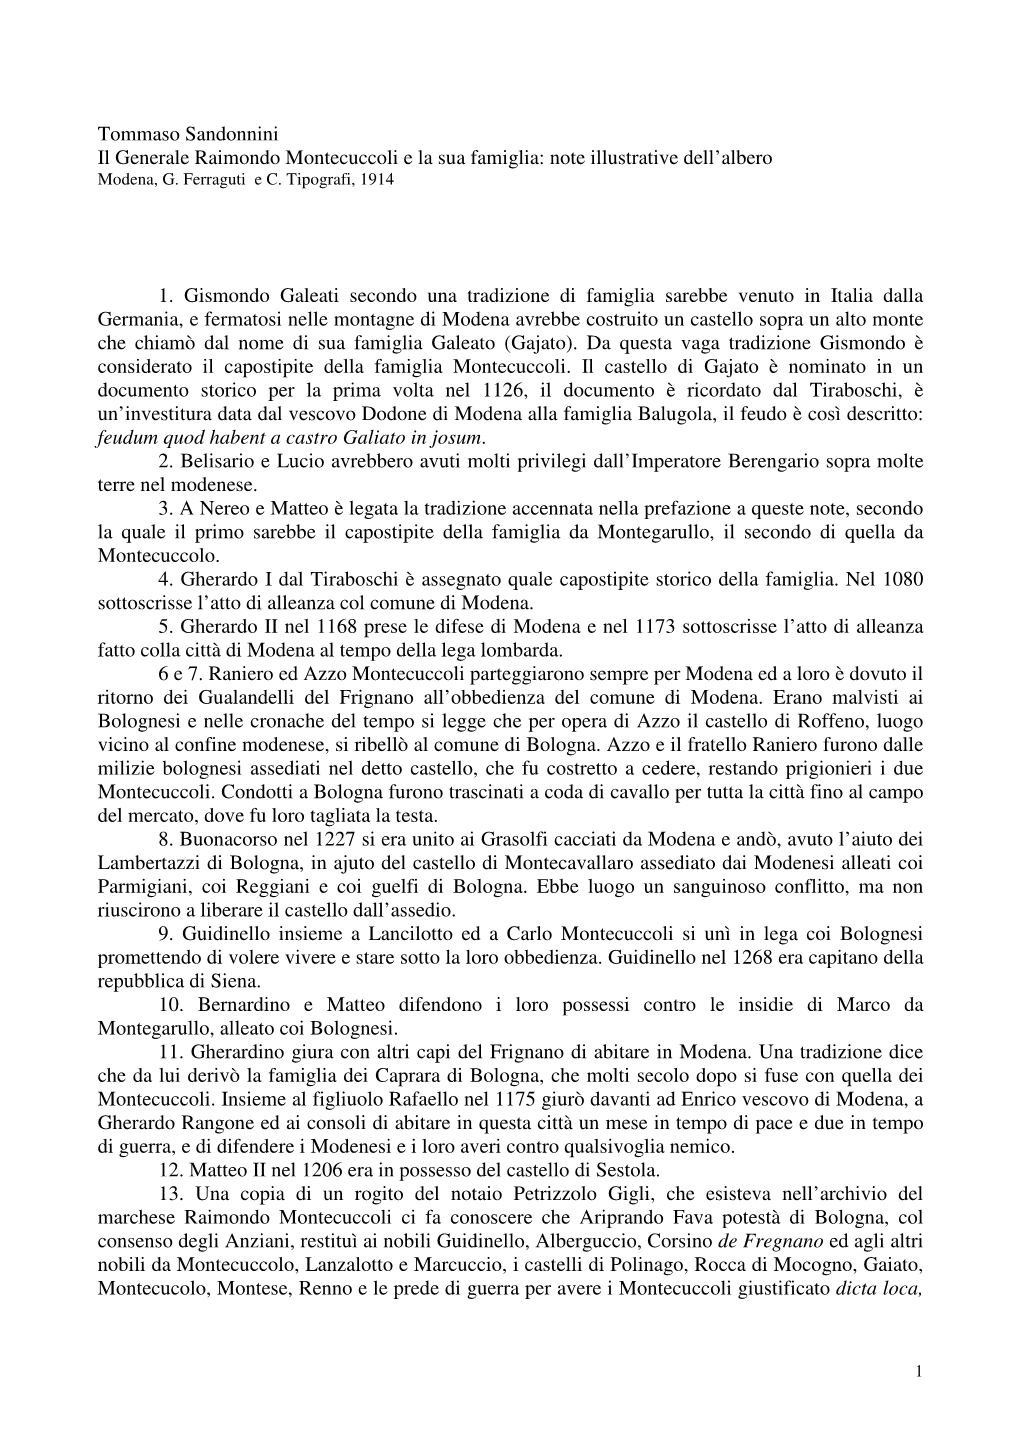 Tommaso Sandonnini Il Generale Raimondo Montecuccoli E La Sua Famiglia: Note Illustrative Dell’Albero Modena, G